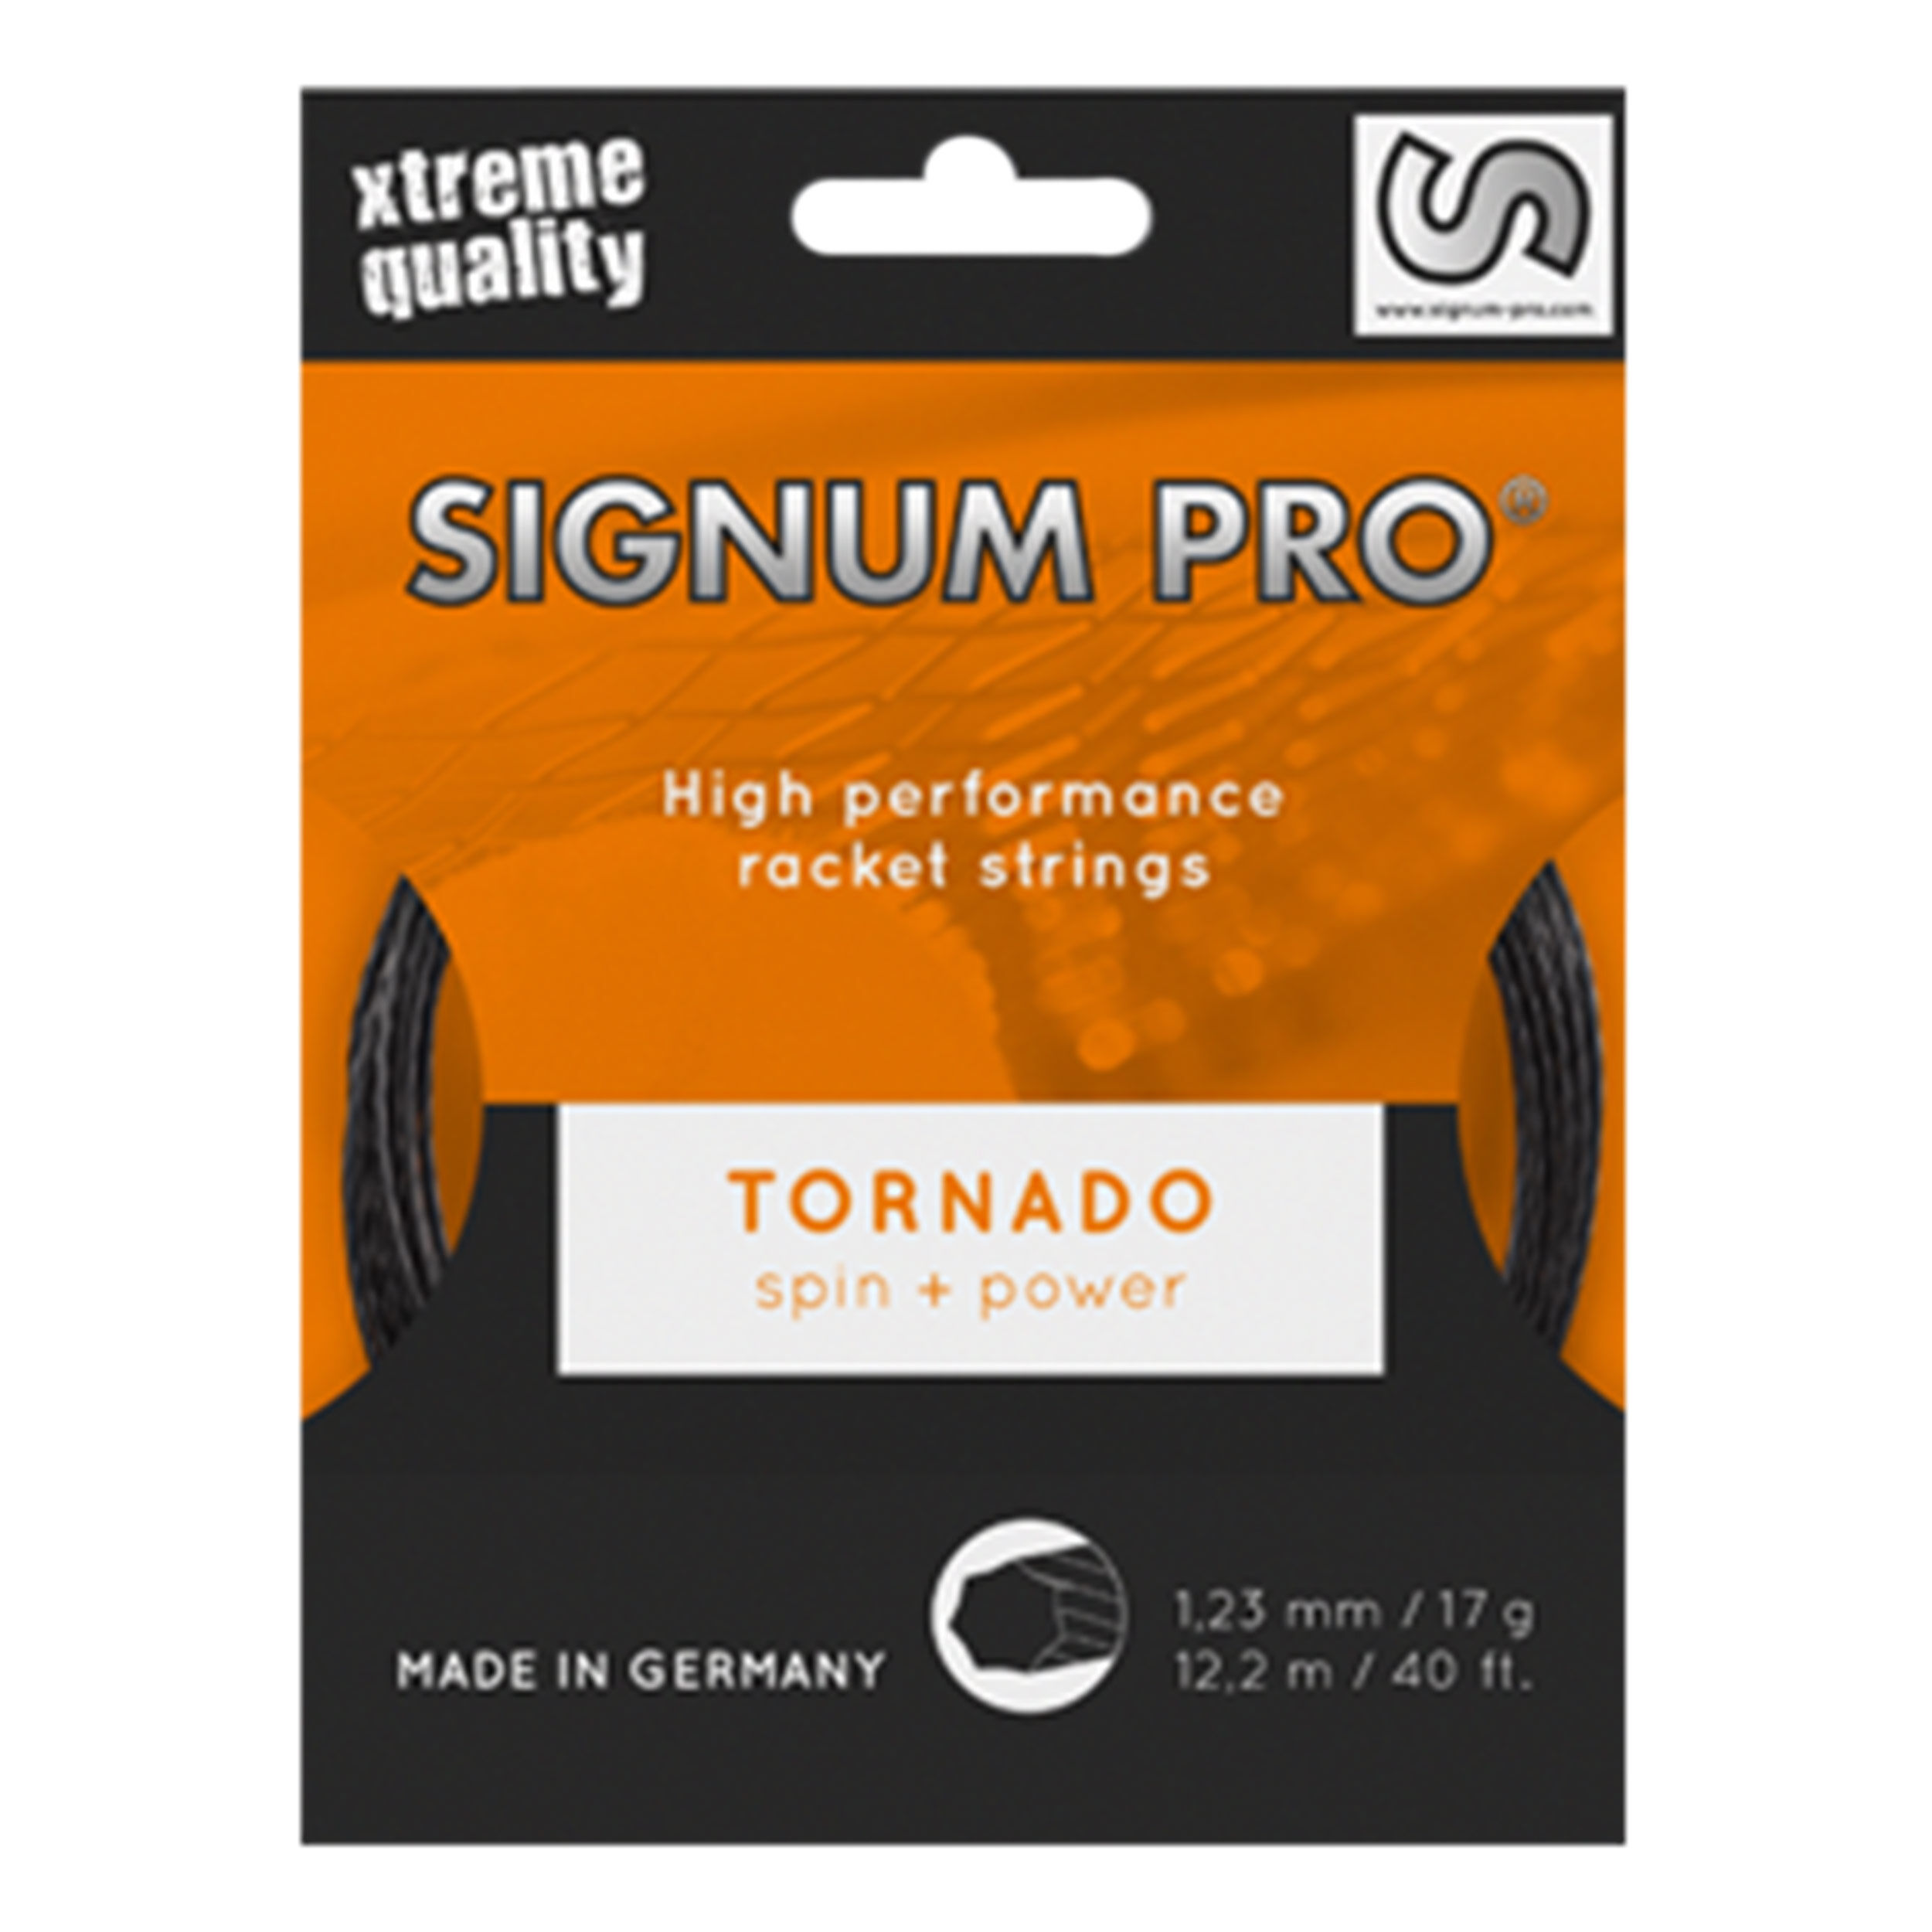 Signum Pro Sigtorn129 Set Tornado 1.29 Tennis String for sale online 